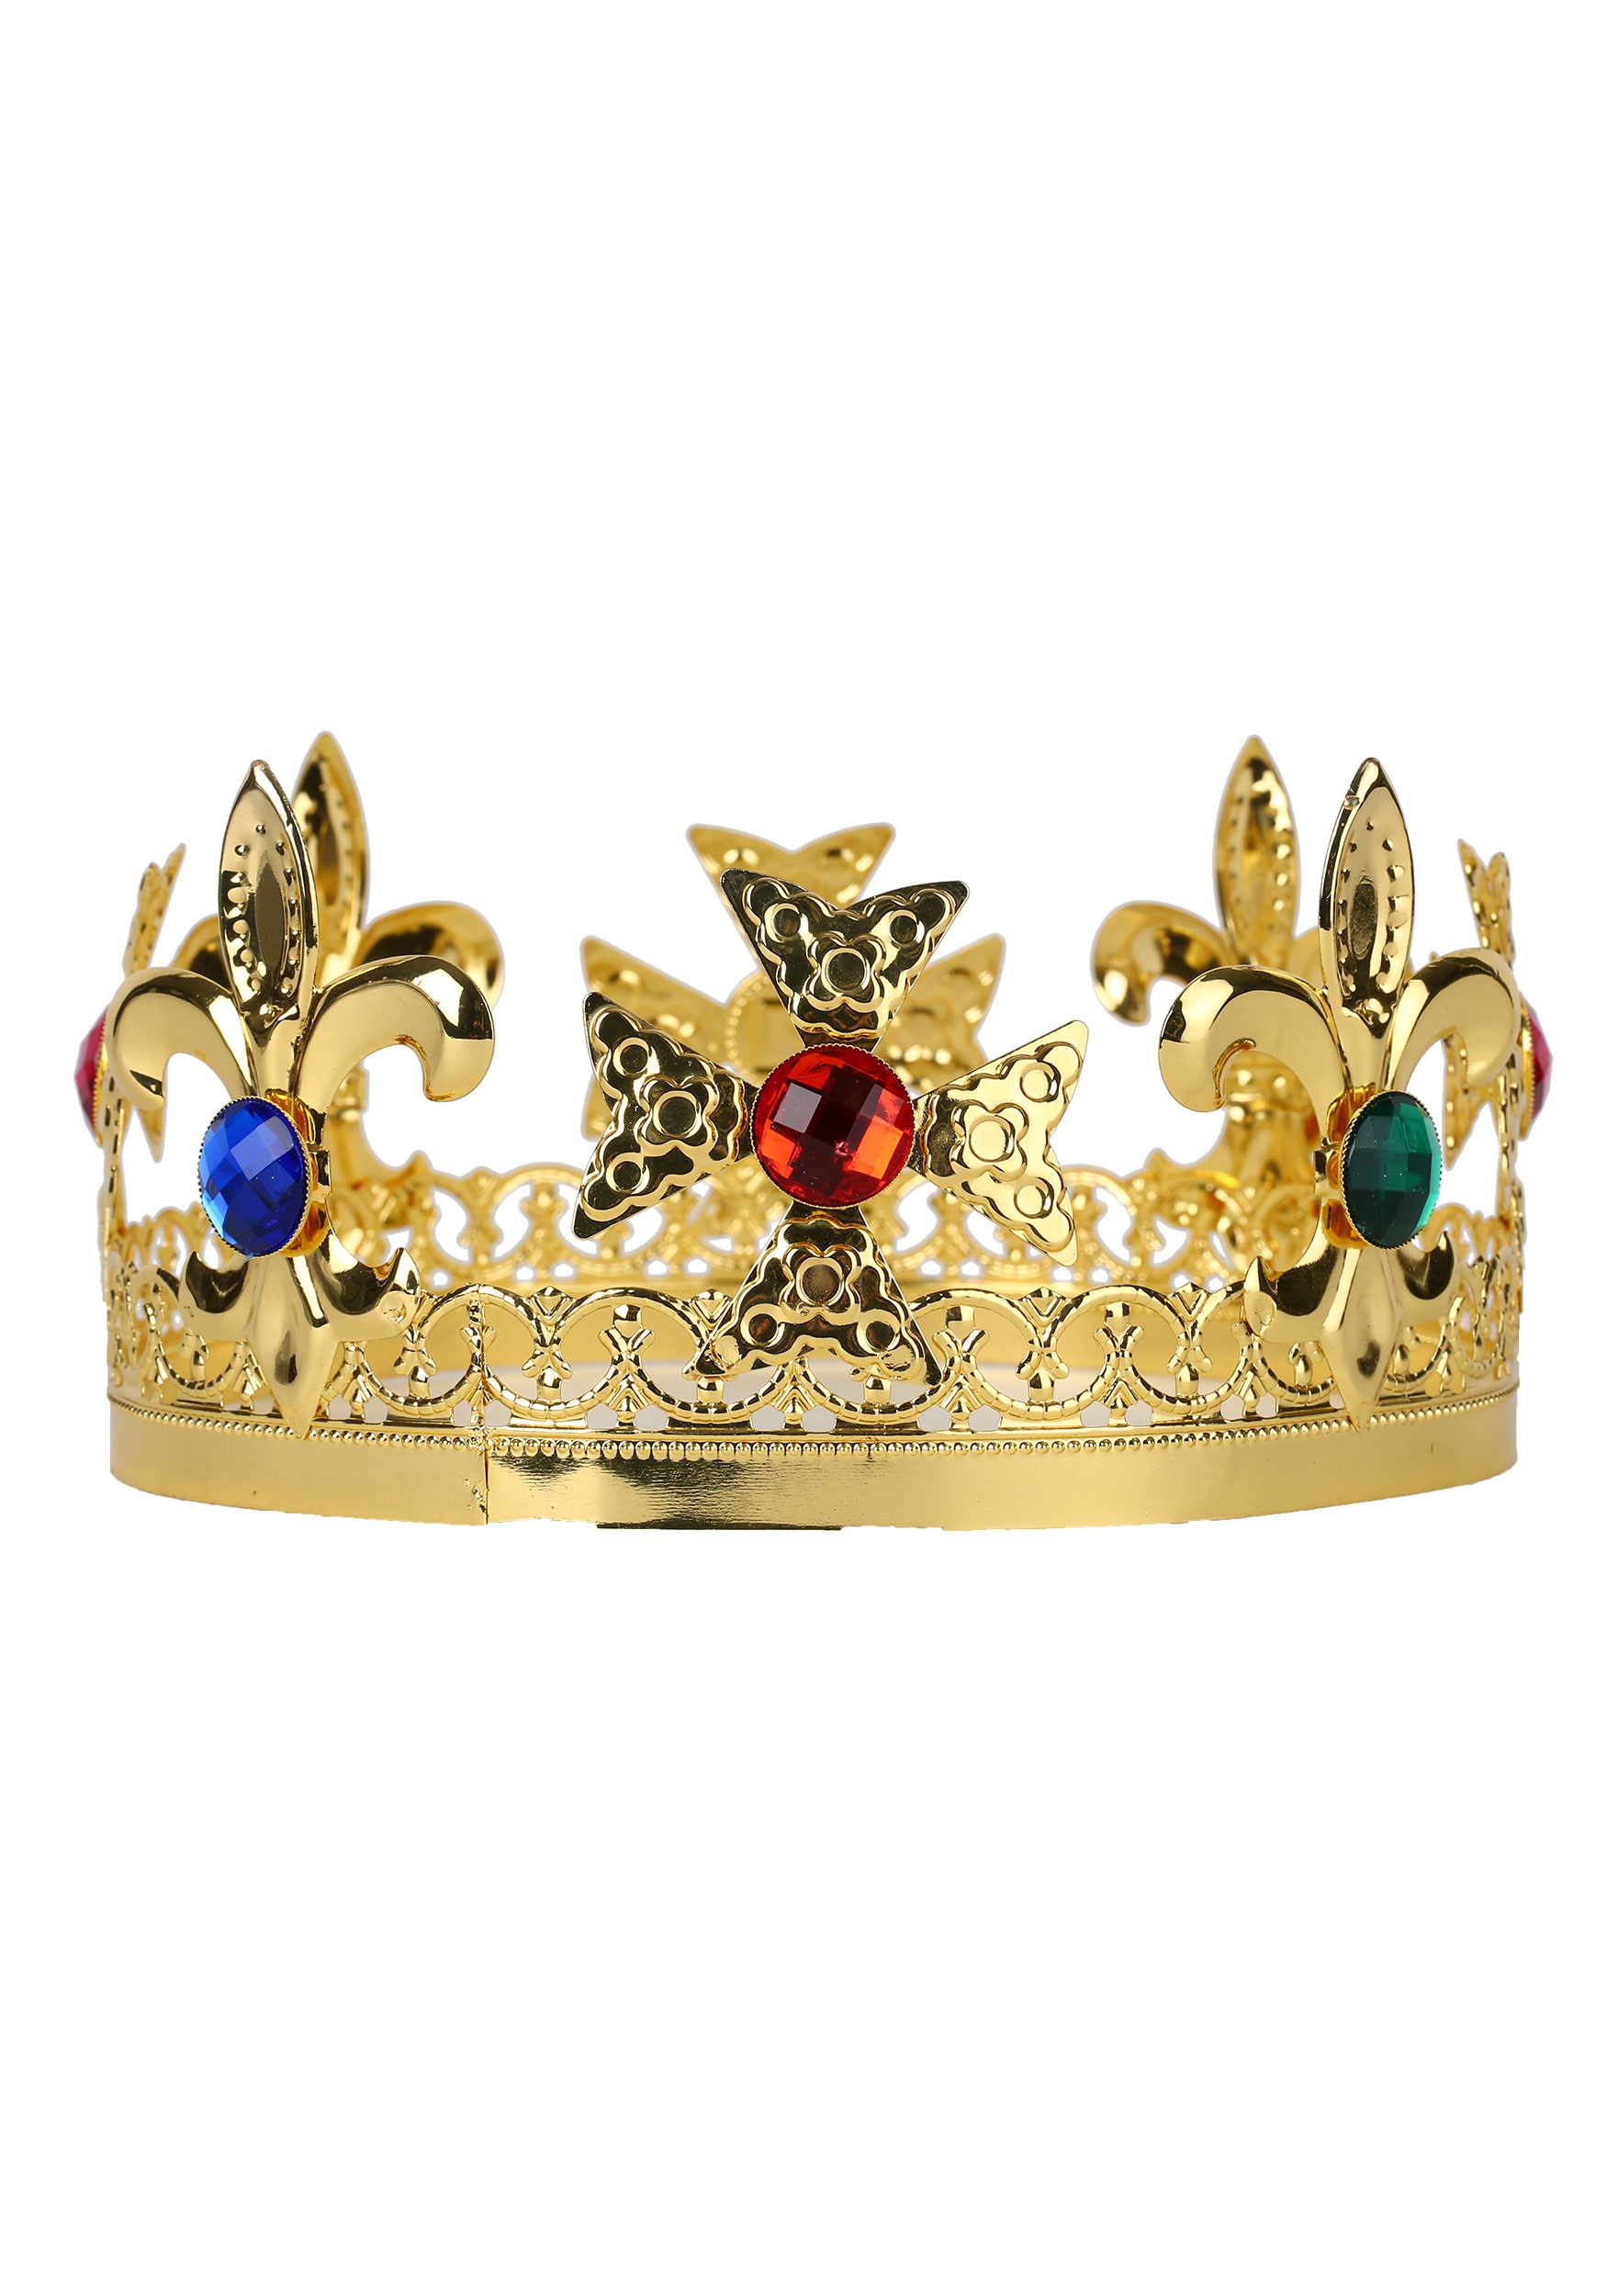 https://images.halloweencostumes.ca/products/35373/1-1/metal-kings-crown.jpg